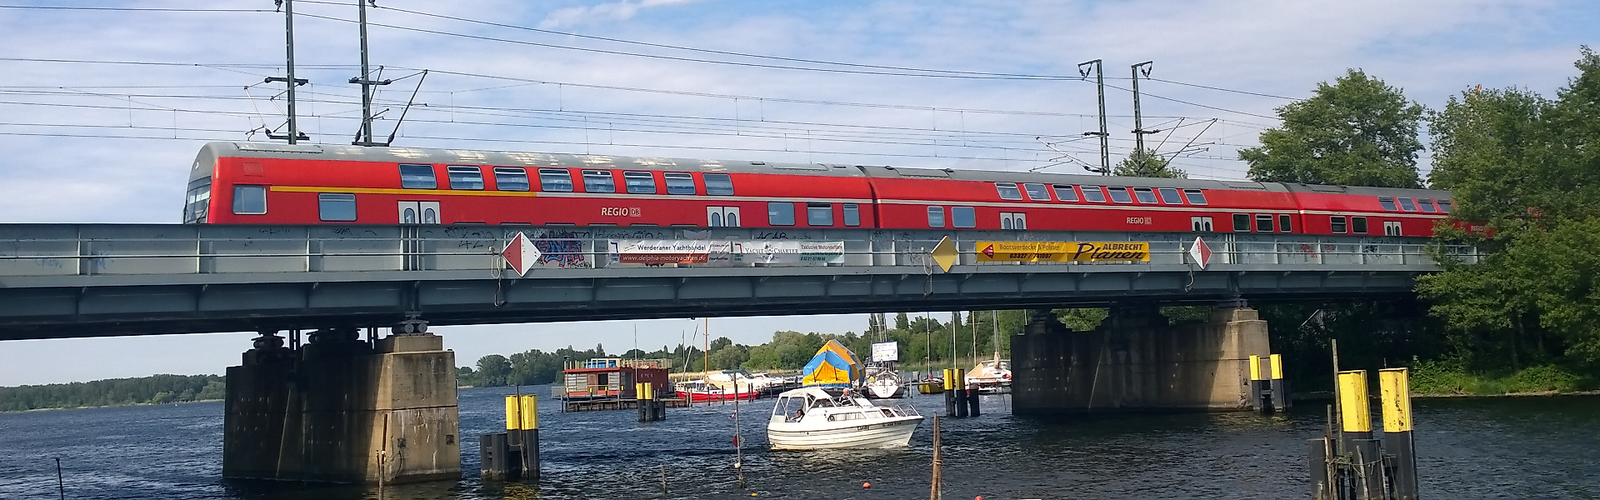 Zug von DB Regio bei Werder (Havel),
        
    

        Foto: Fotograf / Lizenz - Media Import/Matthias Fricke